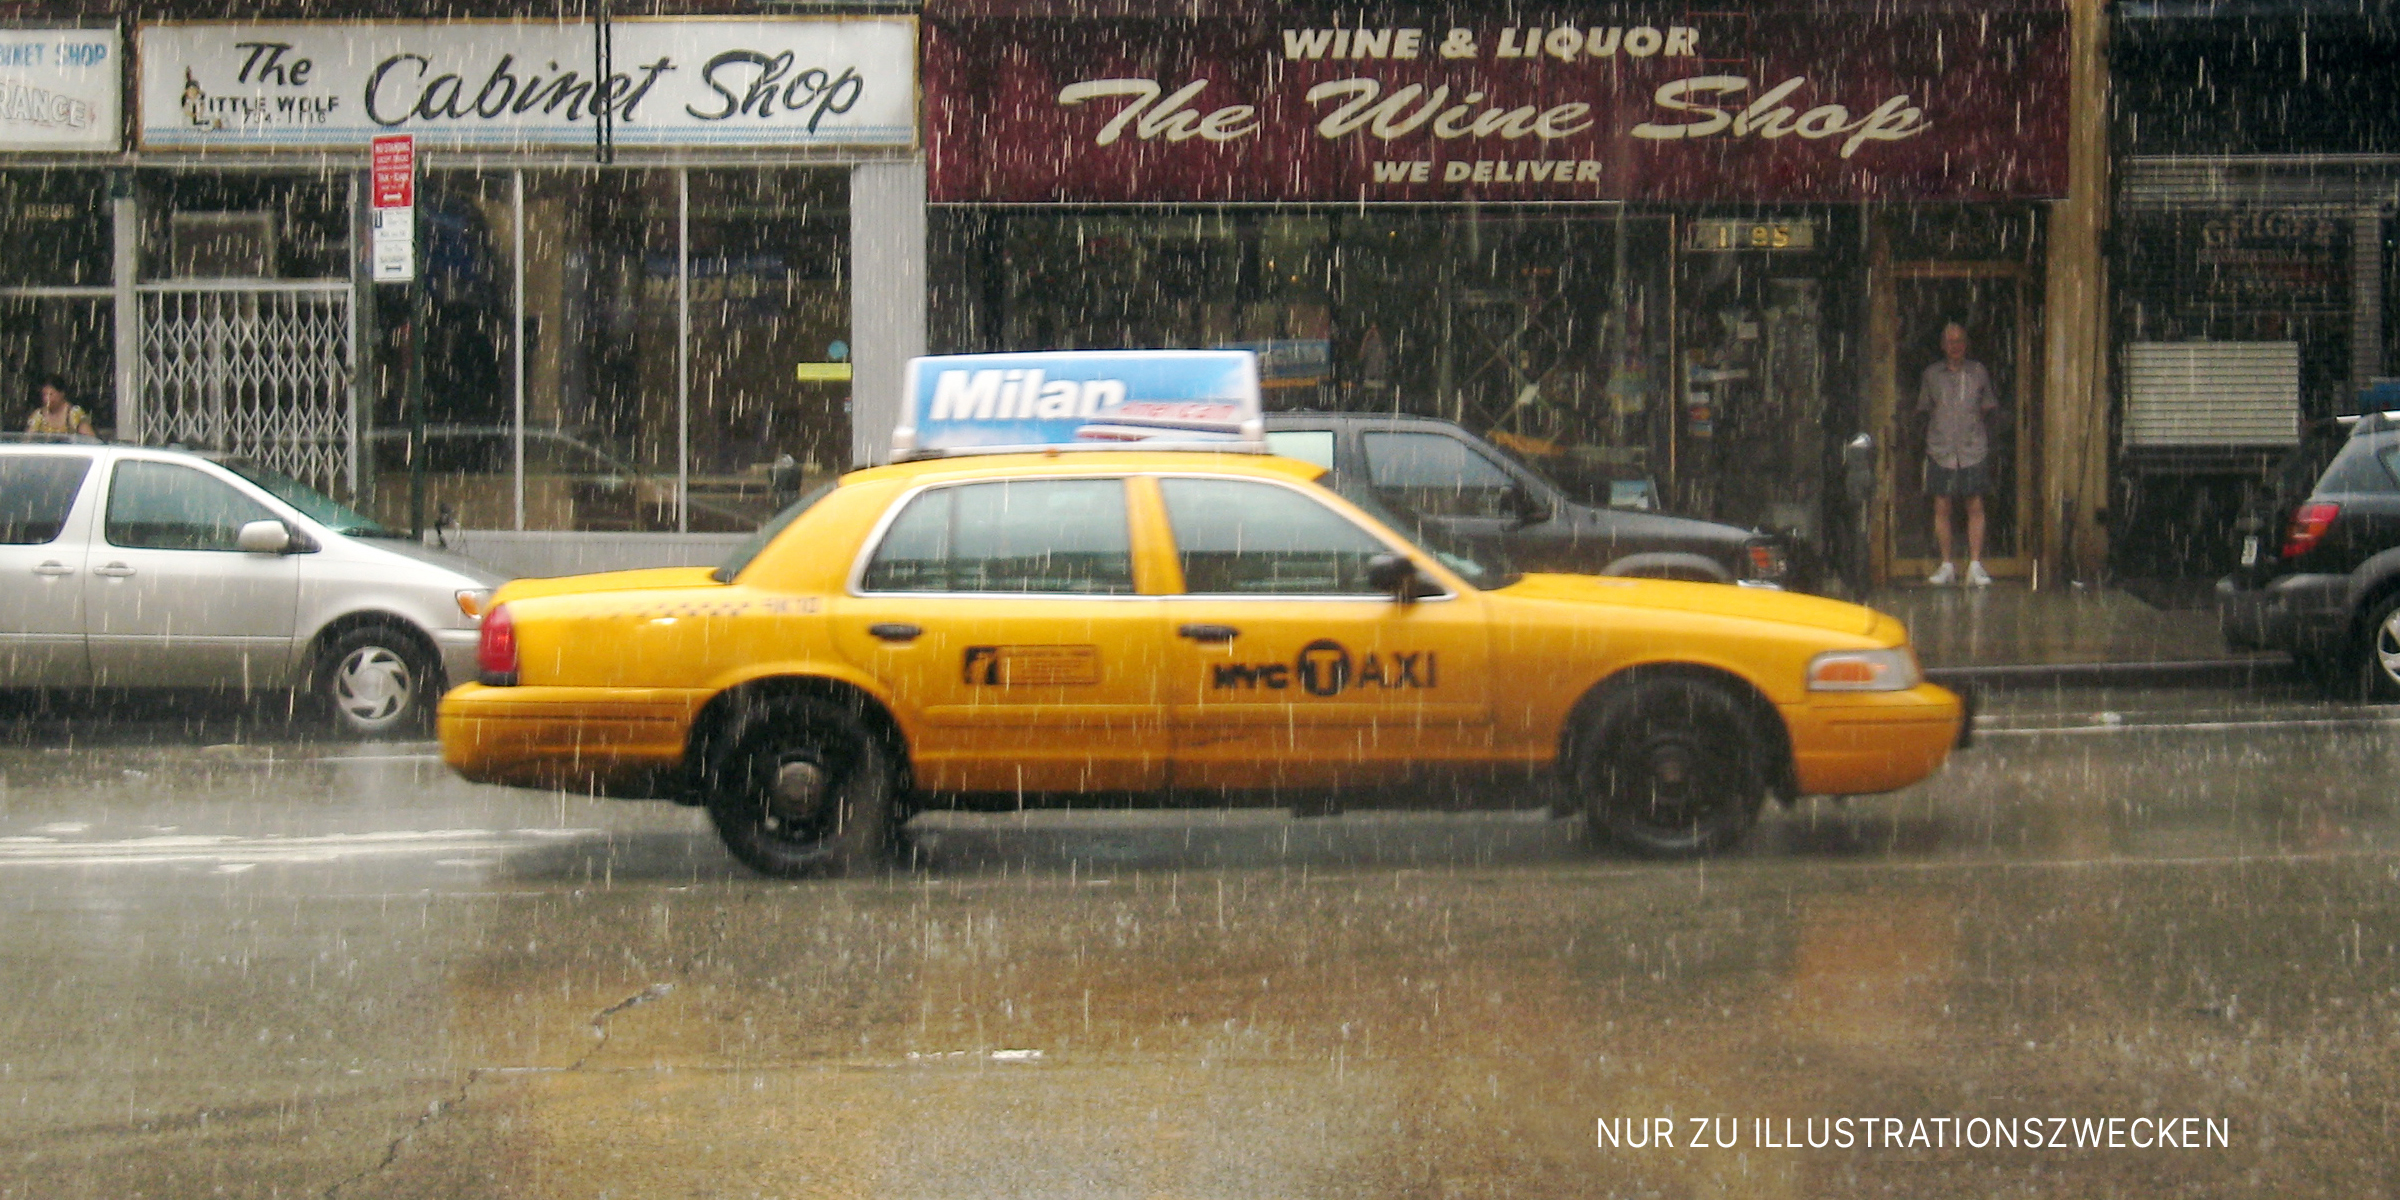 Gelbes Taxi auf einer Stadtstraße bei starkem Regen | Quelle: Flickr / wka (CC BY-SA 2.0)